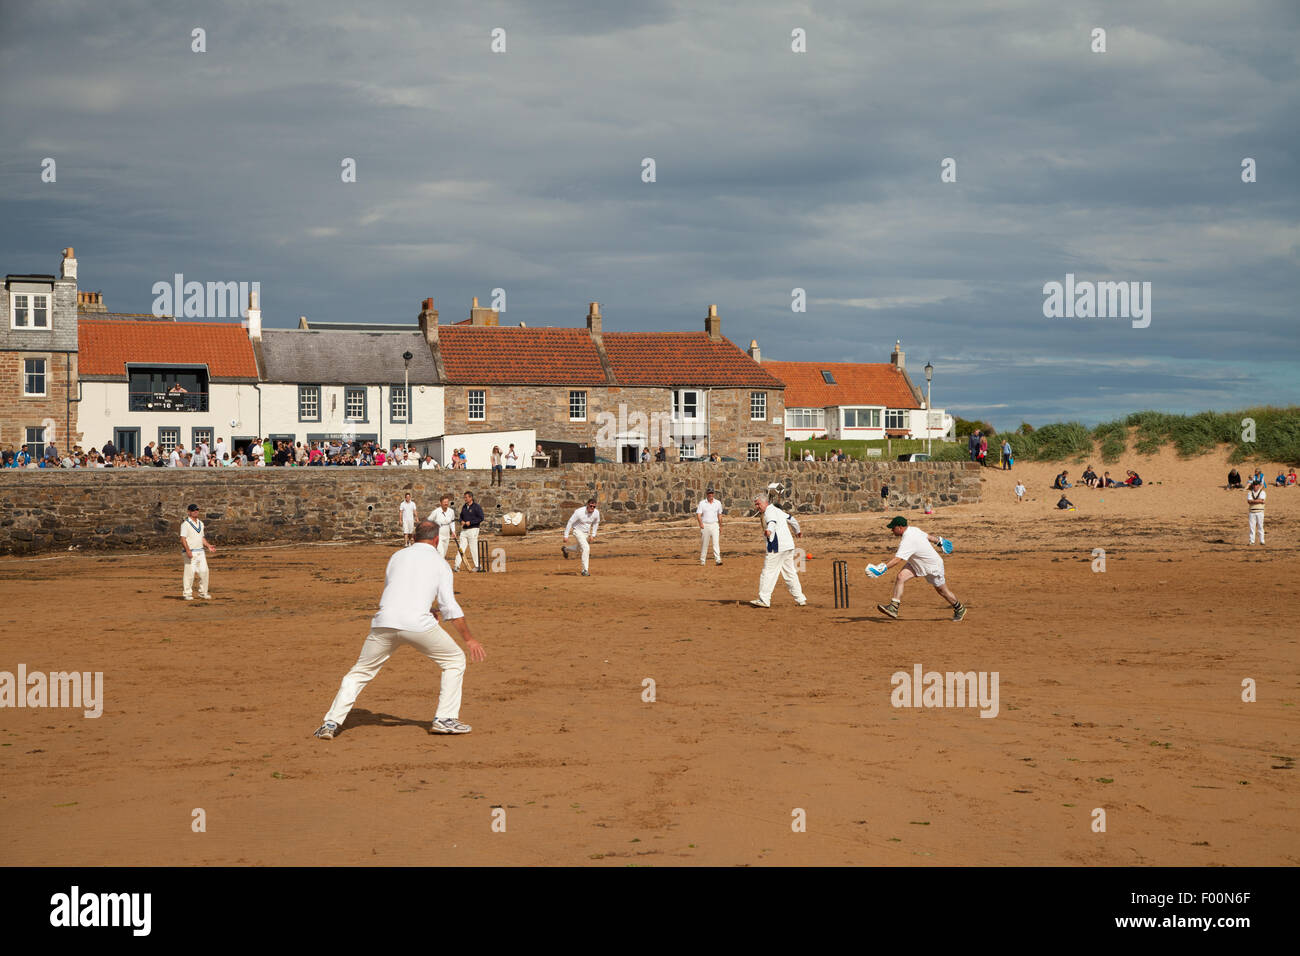 Eine Partie Beach-Cricket gespielt bei Elie, Kingdom of Fife, Schottland. Stockfoto